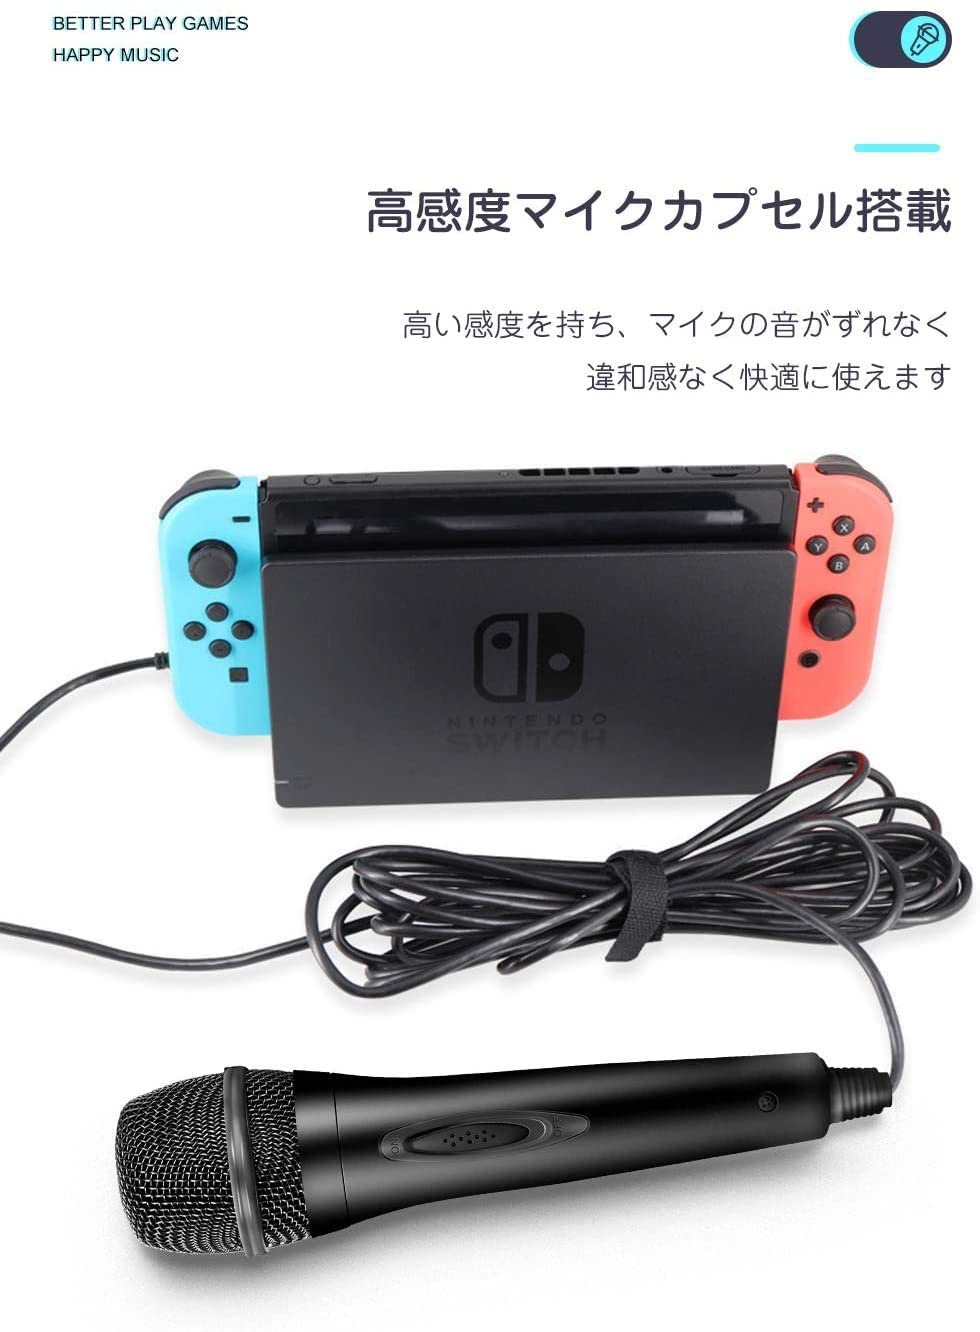 楽天市場 ニンテンドー スイッチ Nintendo Switch カラオケ マイク 有線 ジョイサウンド Ps4 Wiiu 送料無料 Staraba